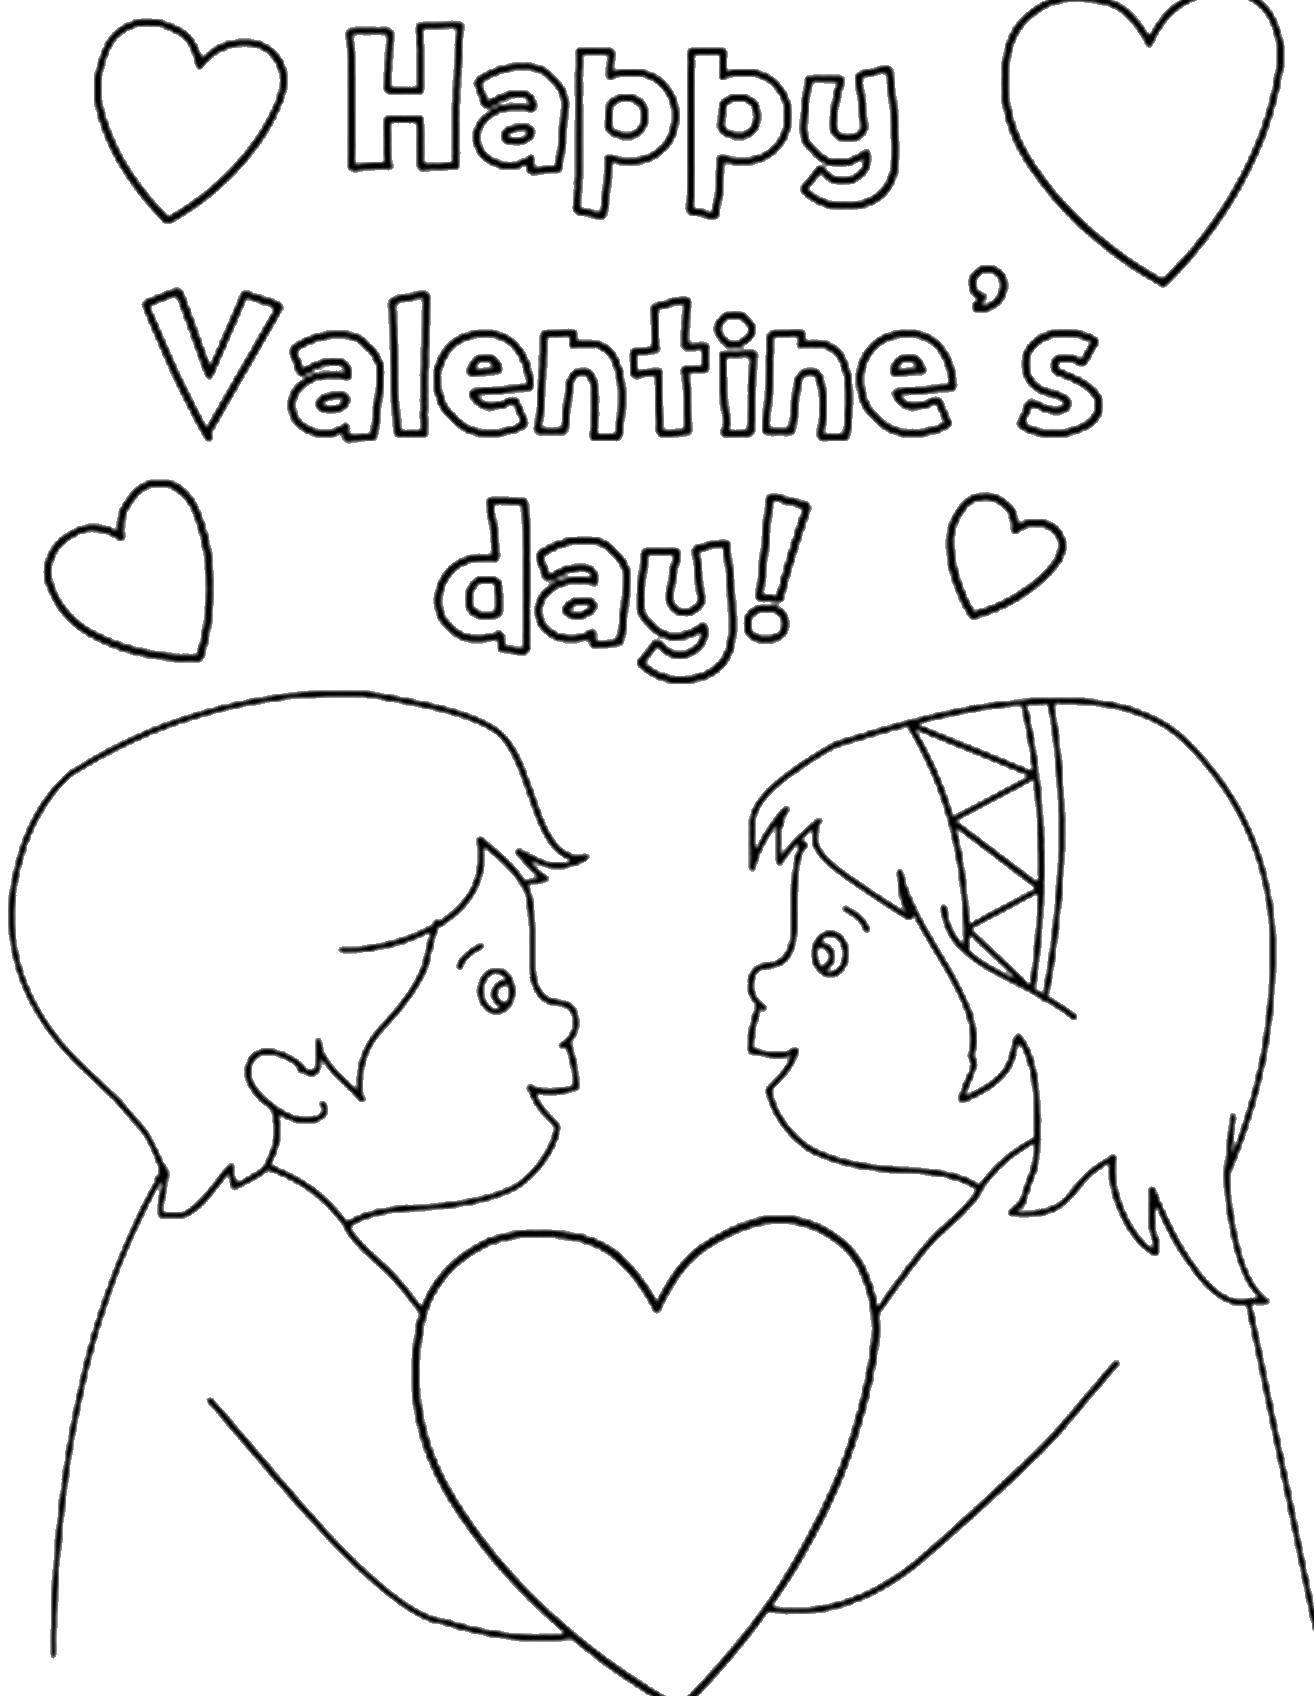 Название: Раскраска Мальчик и девочка. Категория: День святого валентина. Теги: мальчик, девочка, сердце.